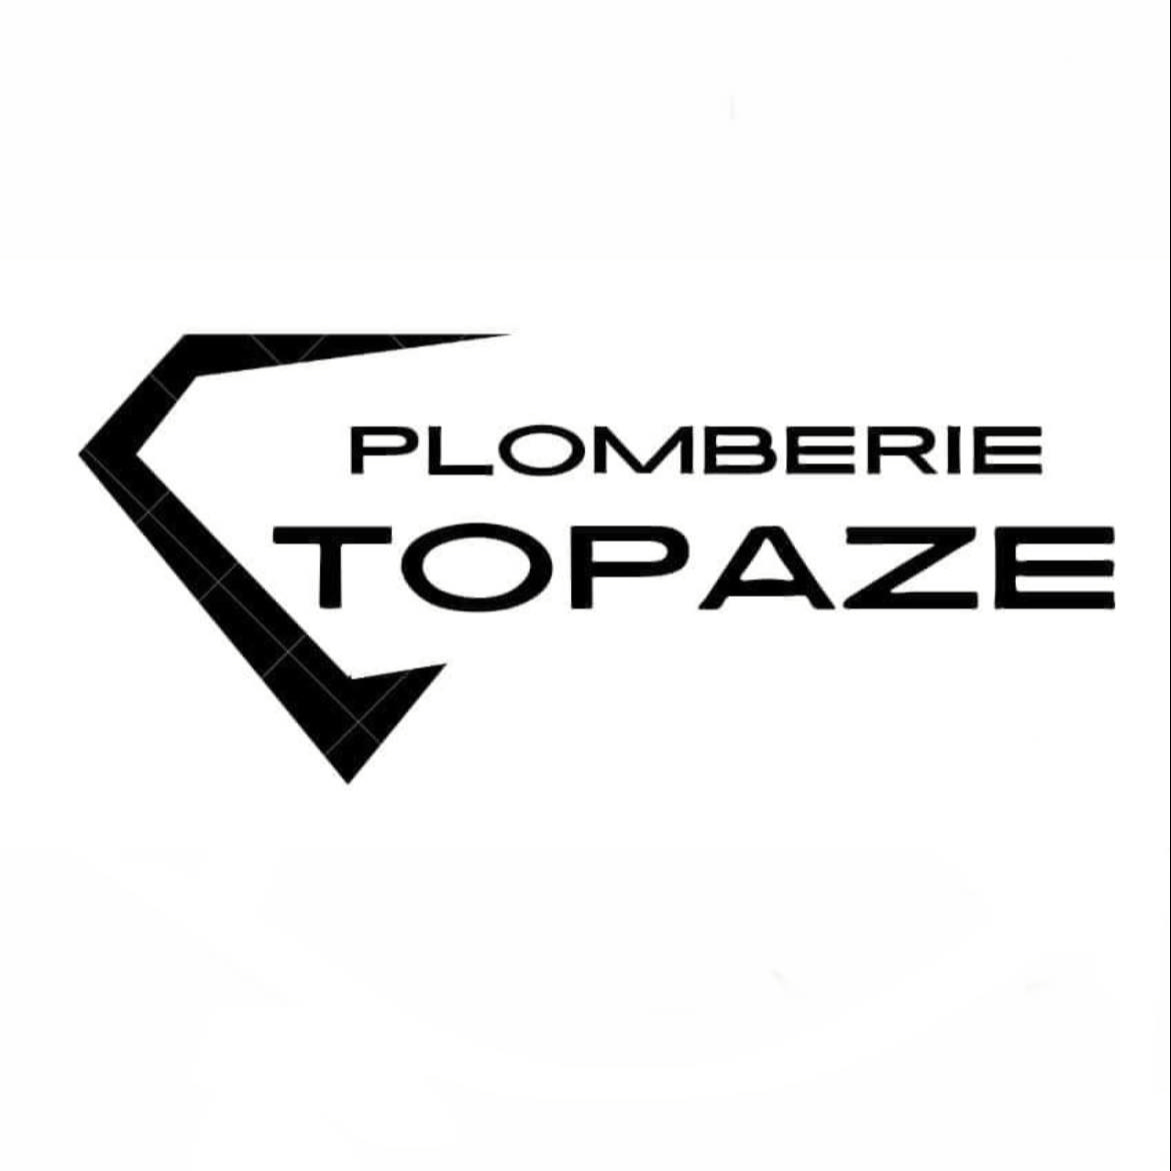 Plomberie Topaze inc. - Plumbers & Plumbing Contractors